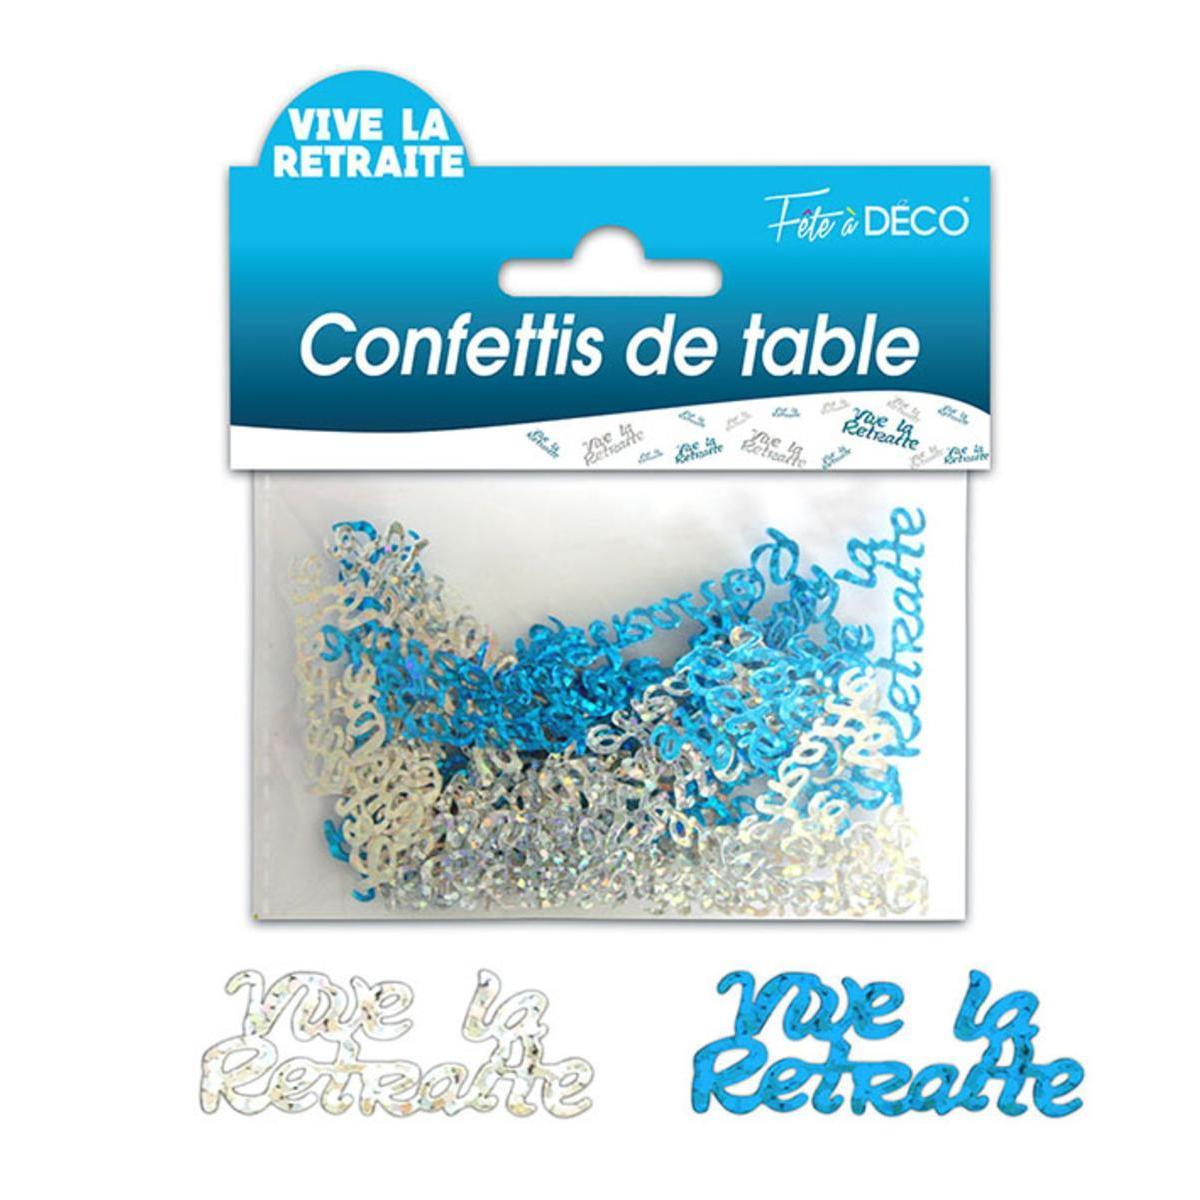 Confettis de table Vive la retraite hologramme - Bleu